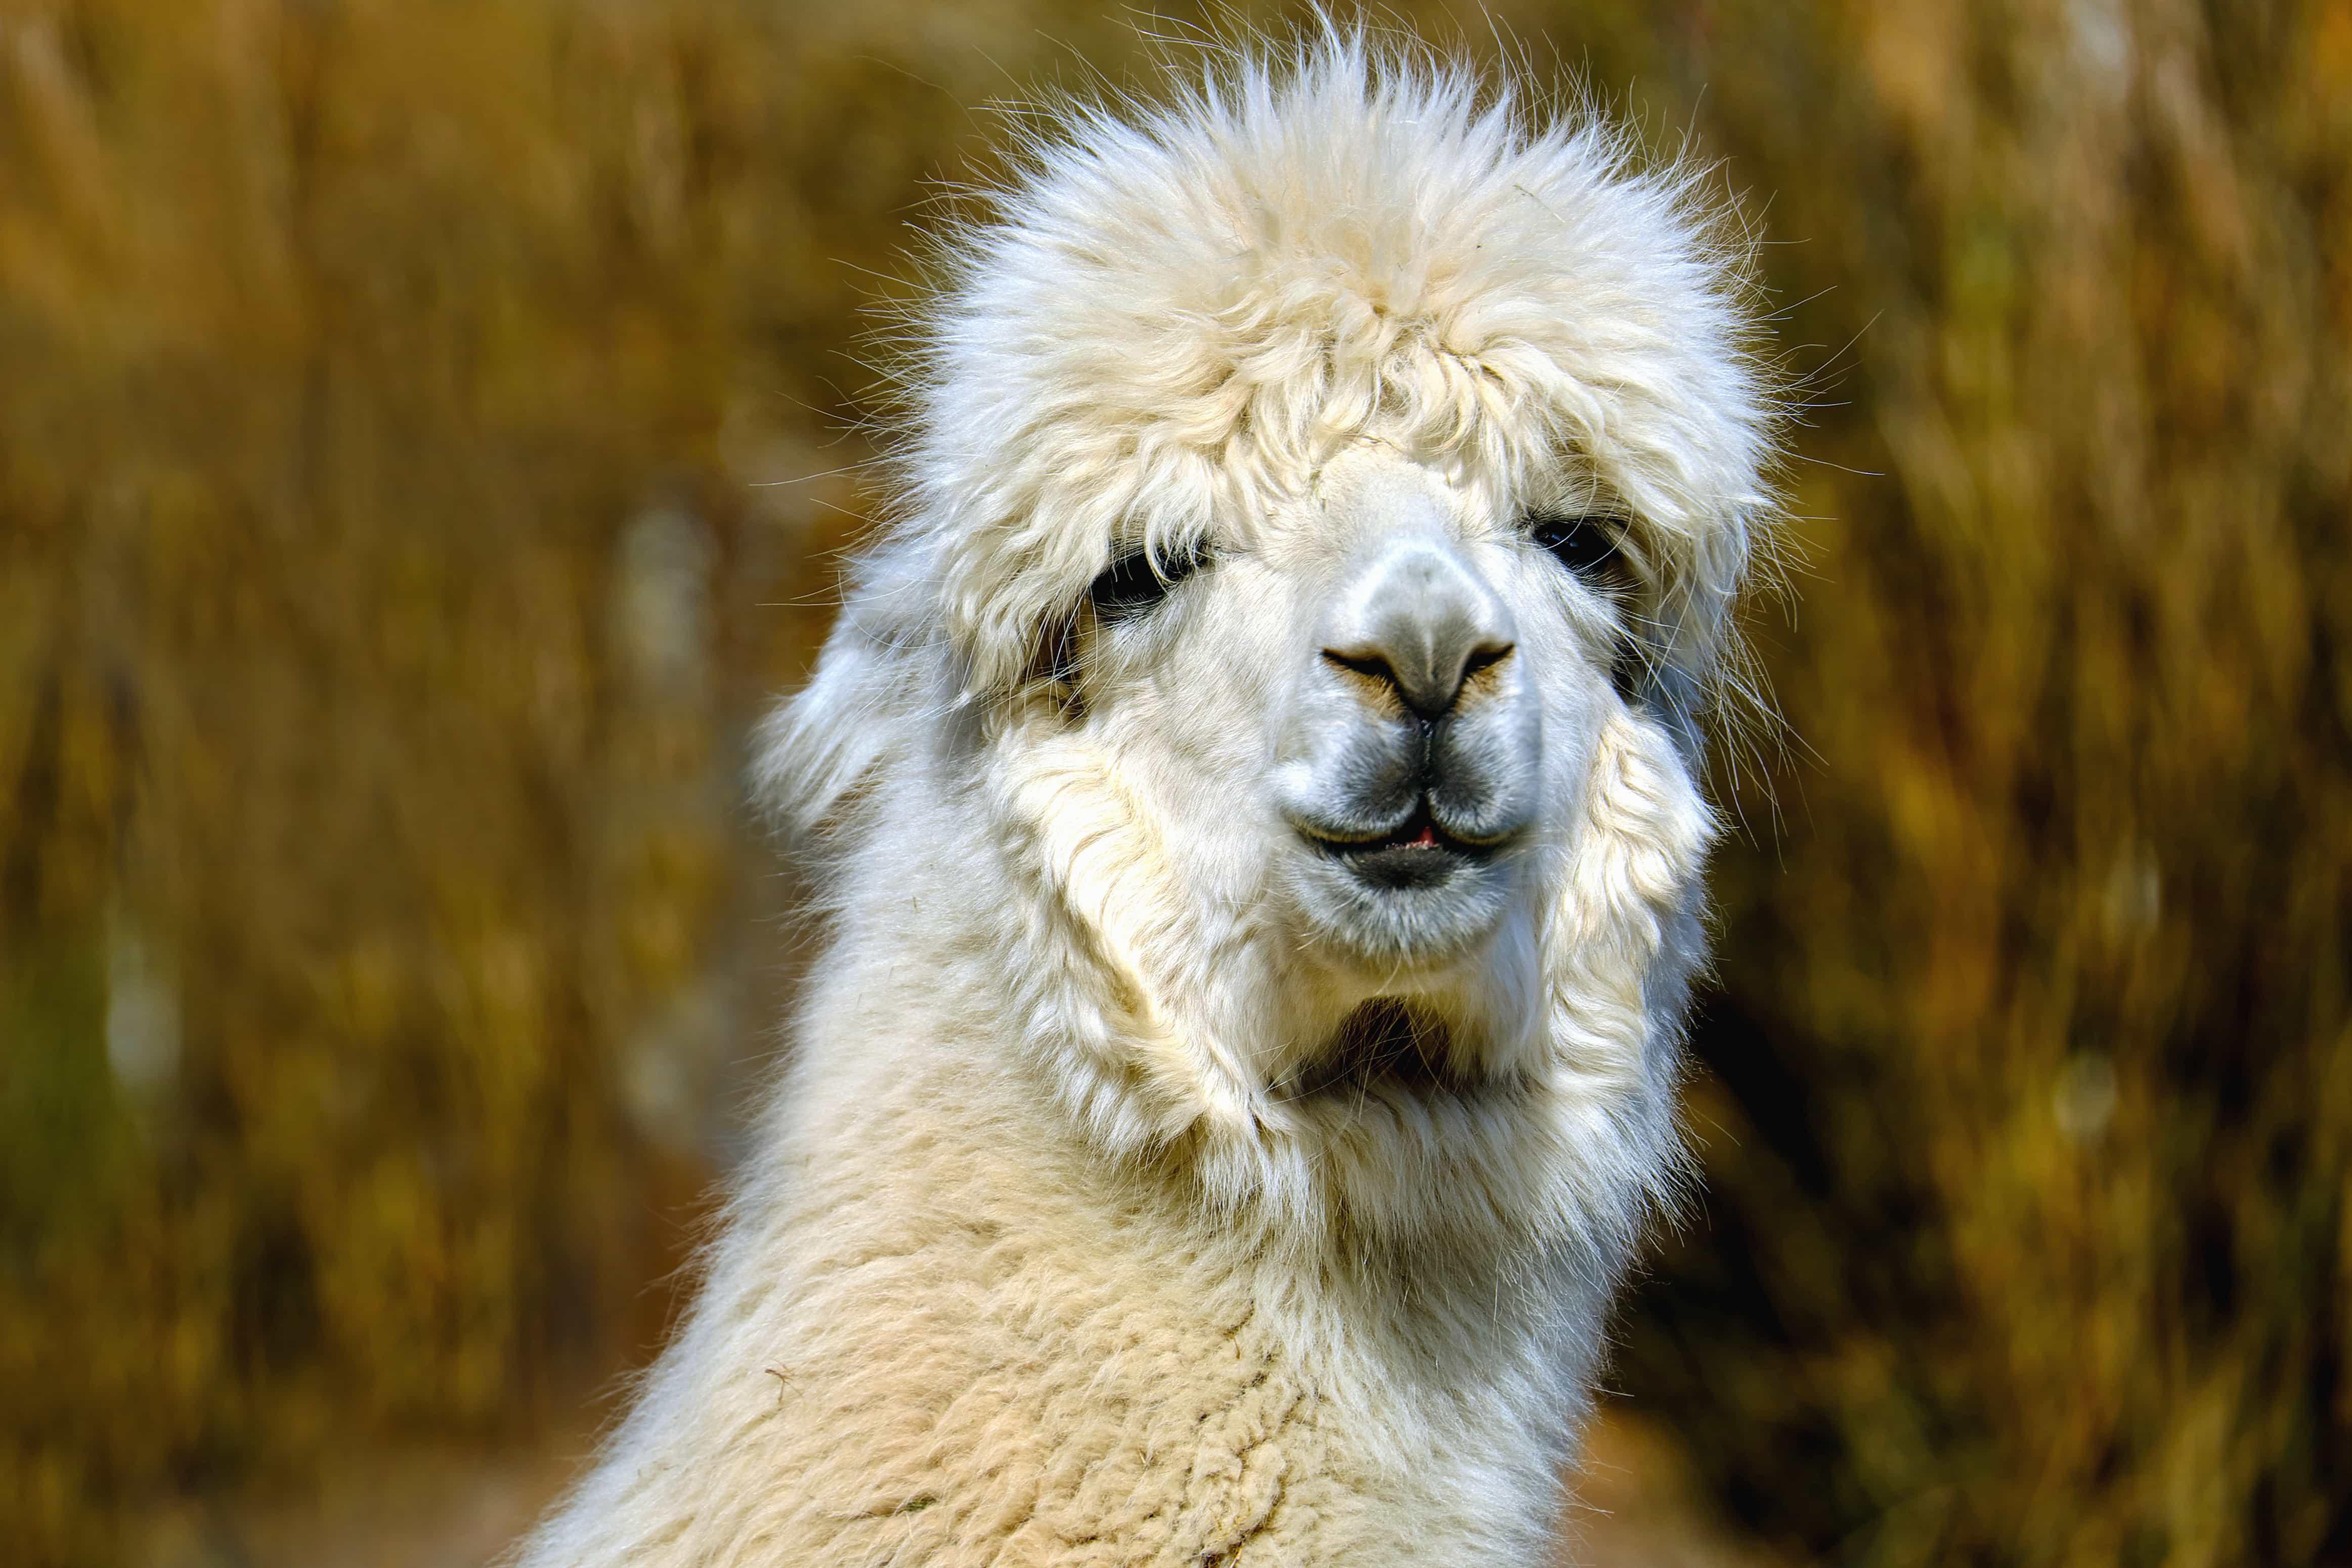 Free picture: alpaca, animal, fur, portrait, wildlife, llama, wild ...